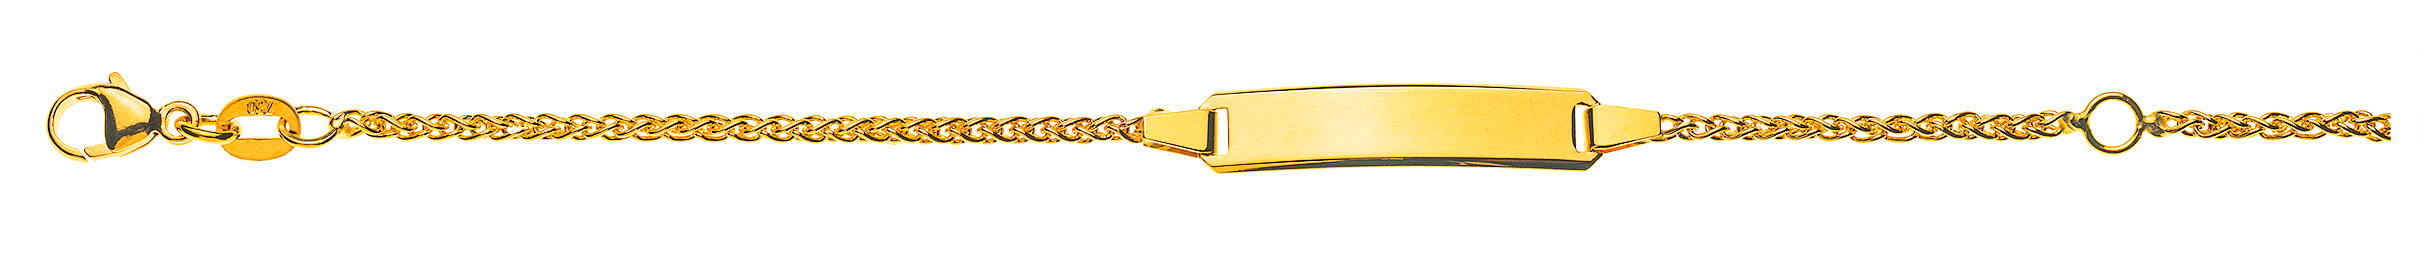 AURONOS Élégance ID bracelet 14k yellow gold plait chain 16cm